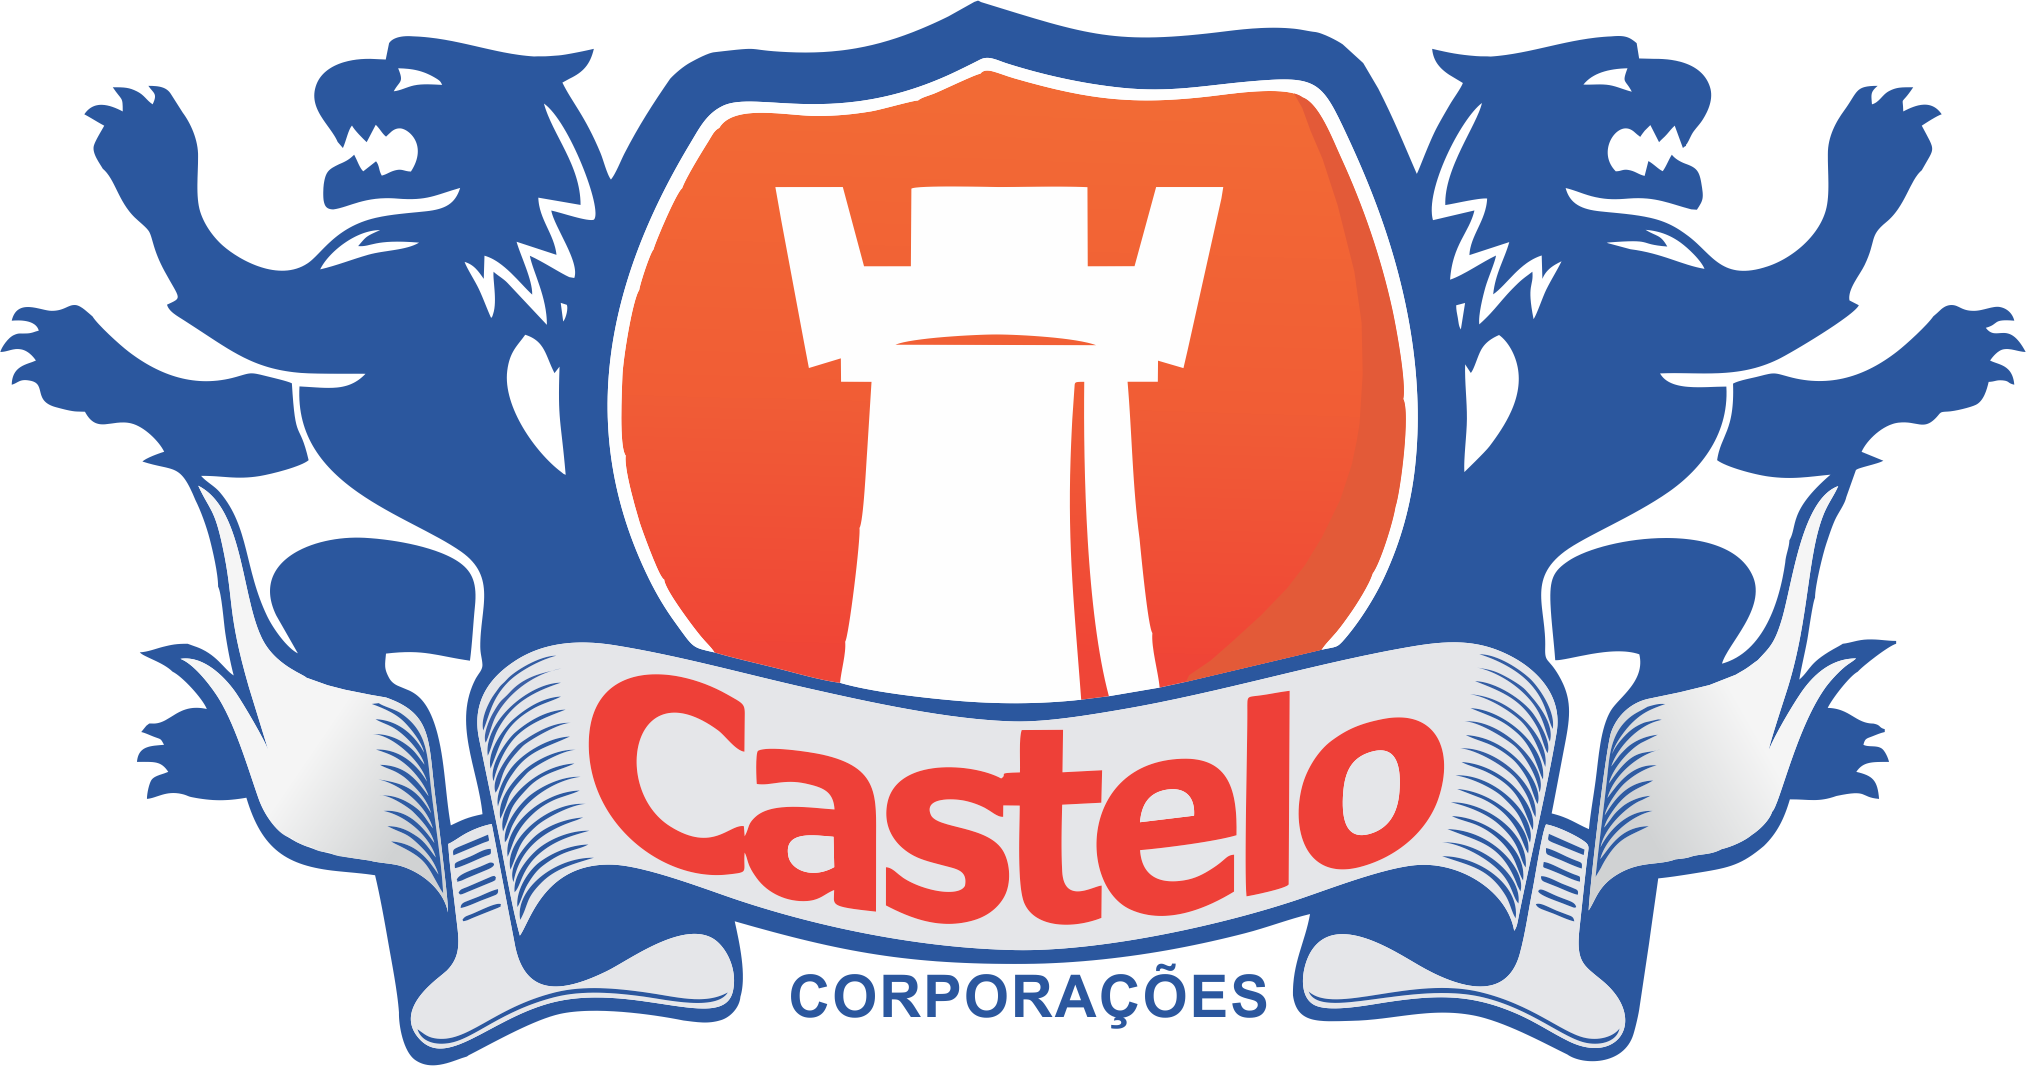 Castelo corporações